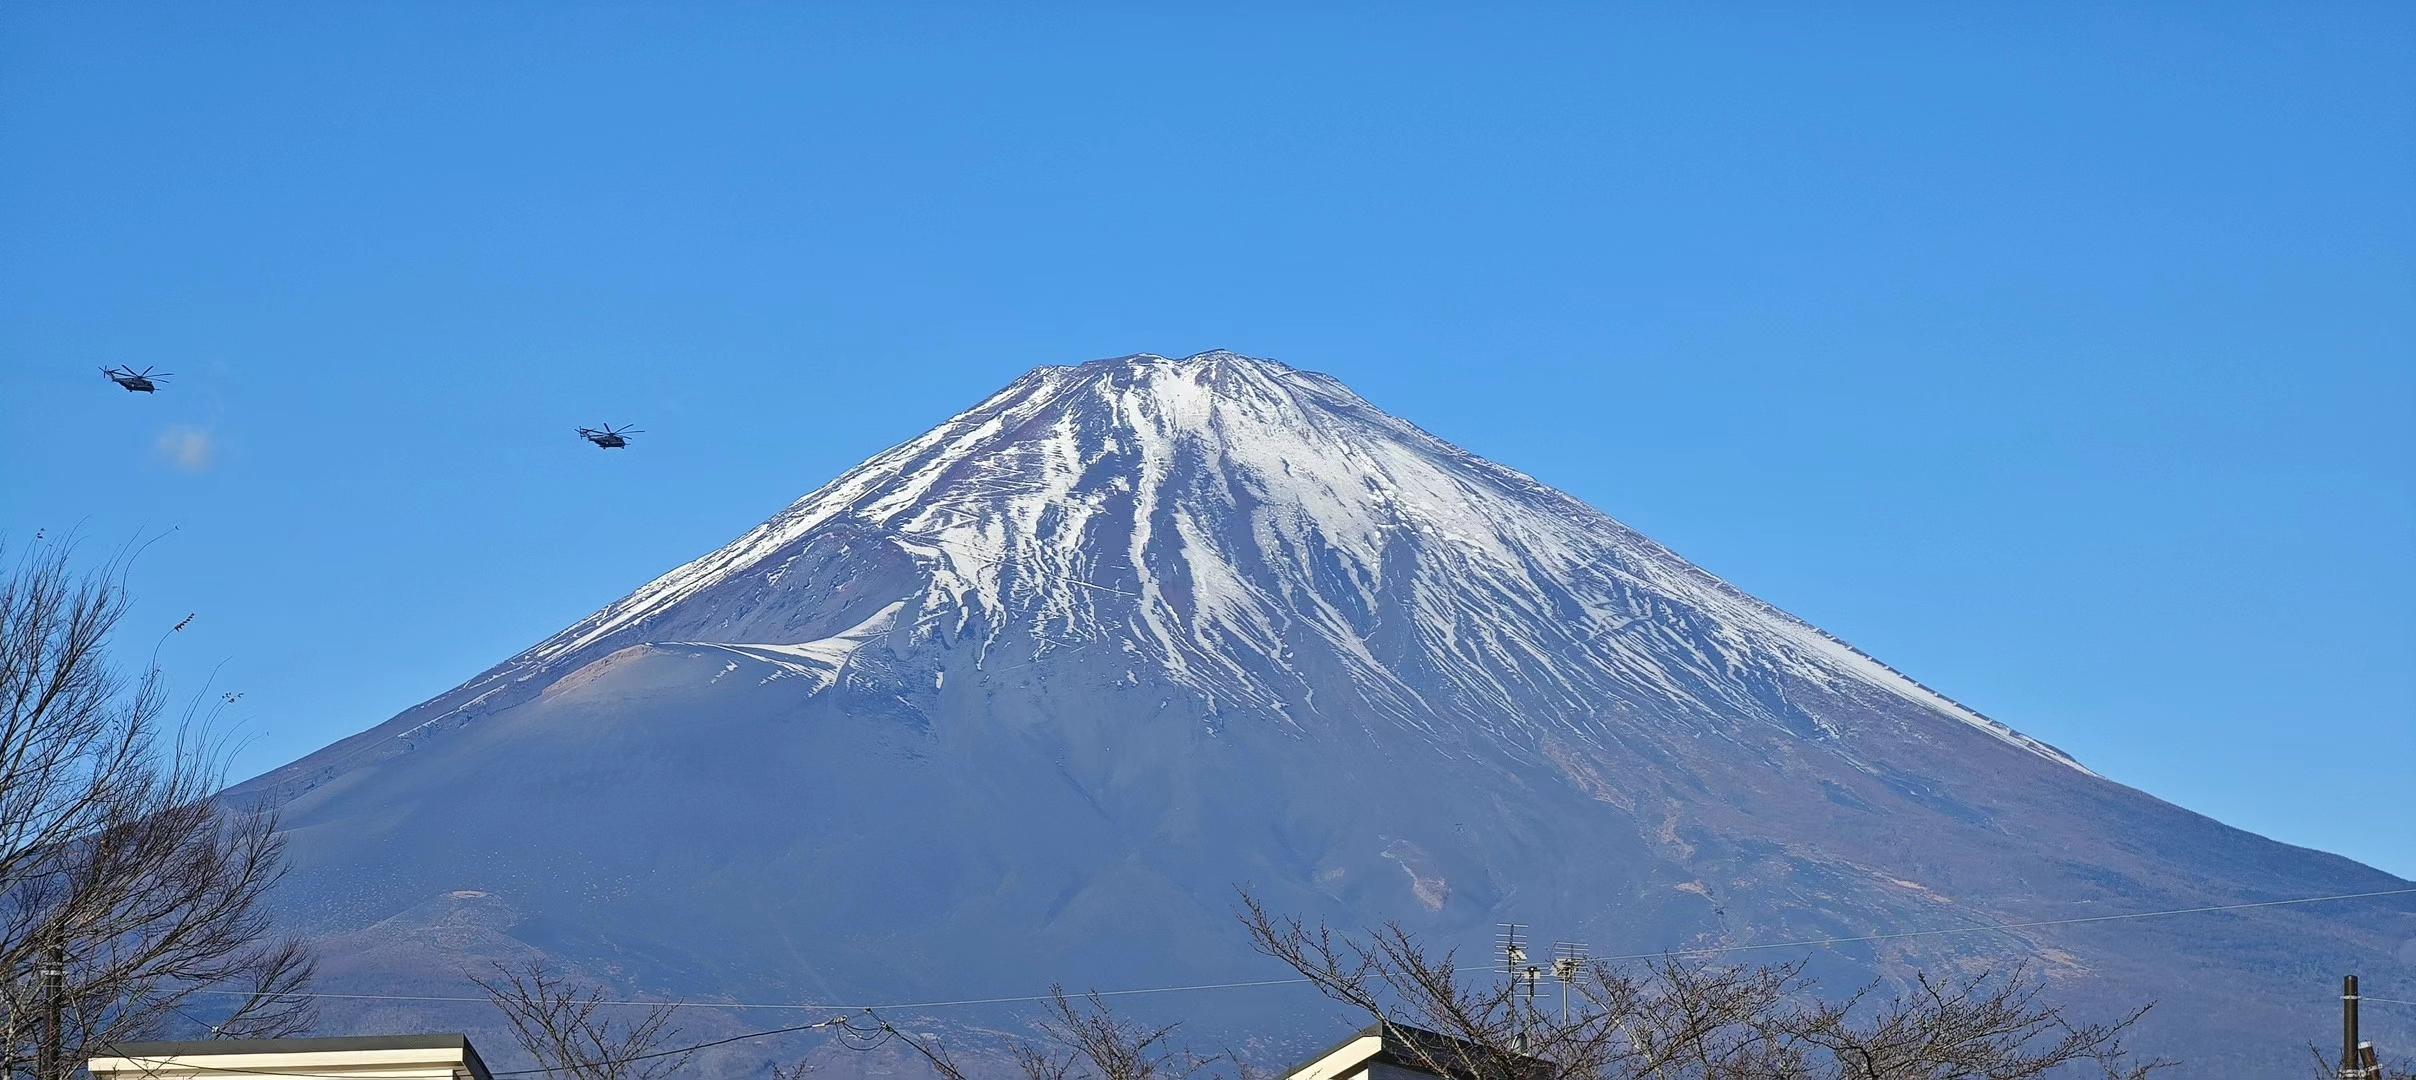 2023年11月底的日本富士山风光海拔3776米的富士山位于山梨县和静冈县